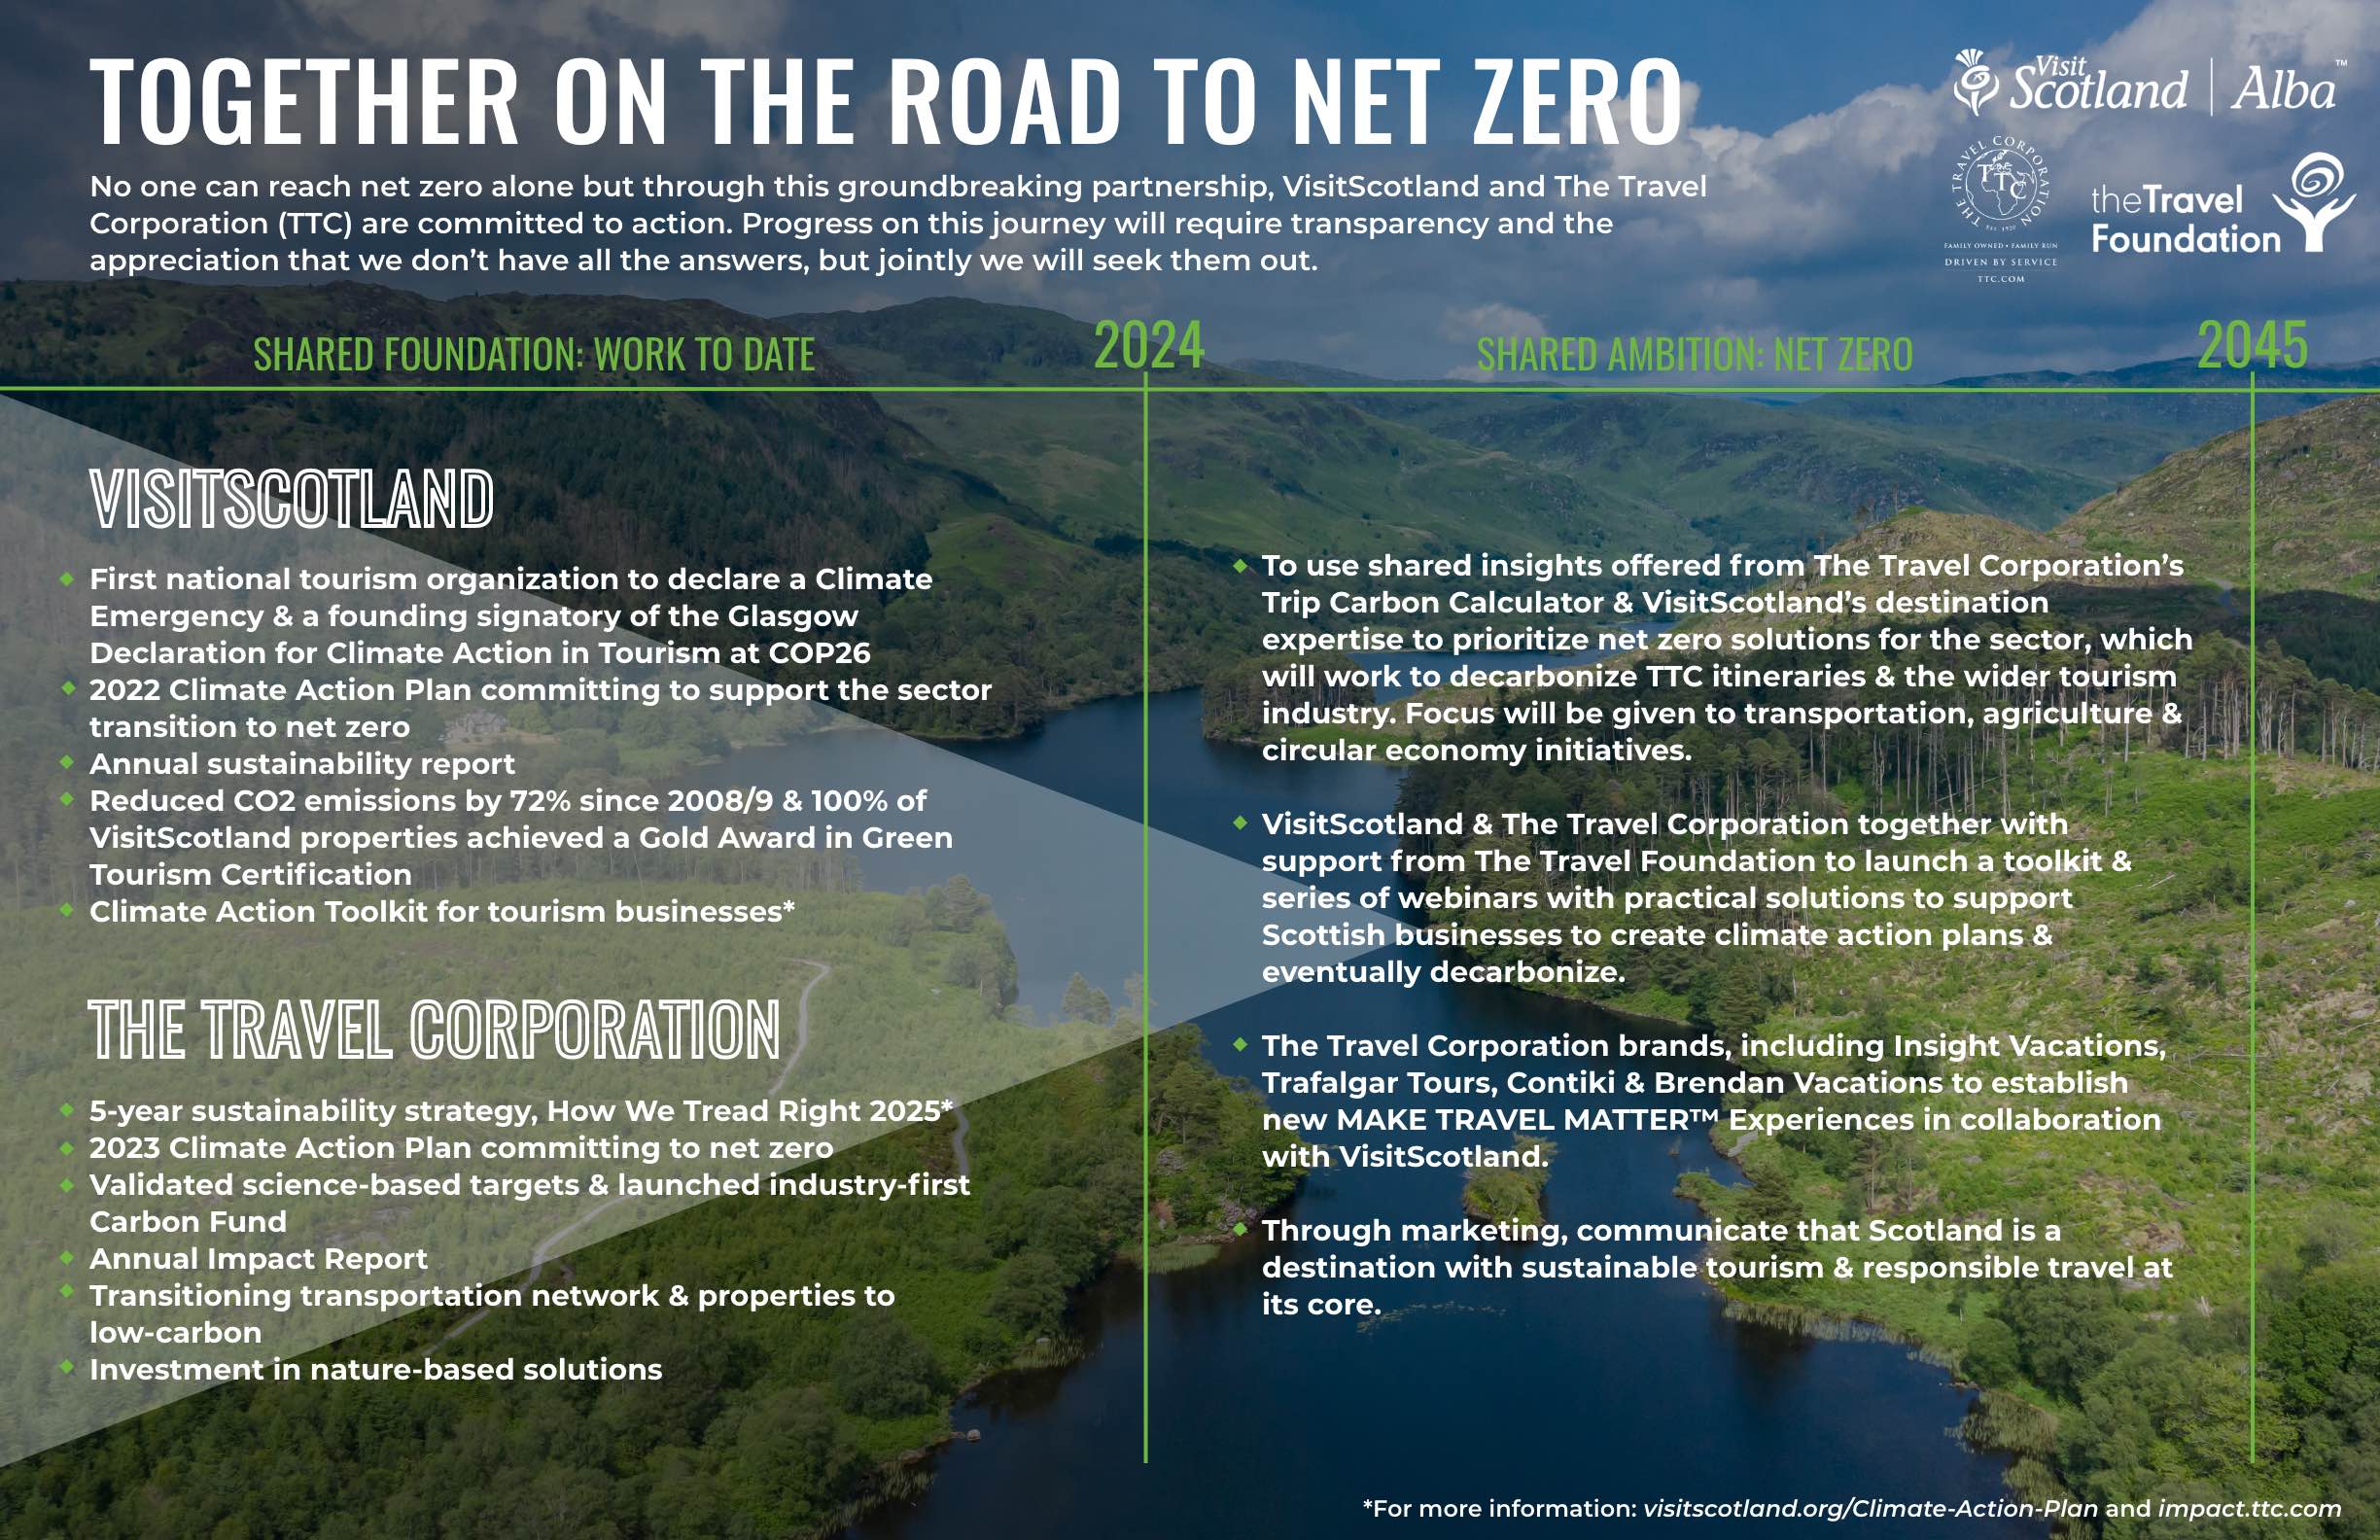 The Travel Corporation's Net Zero Journey